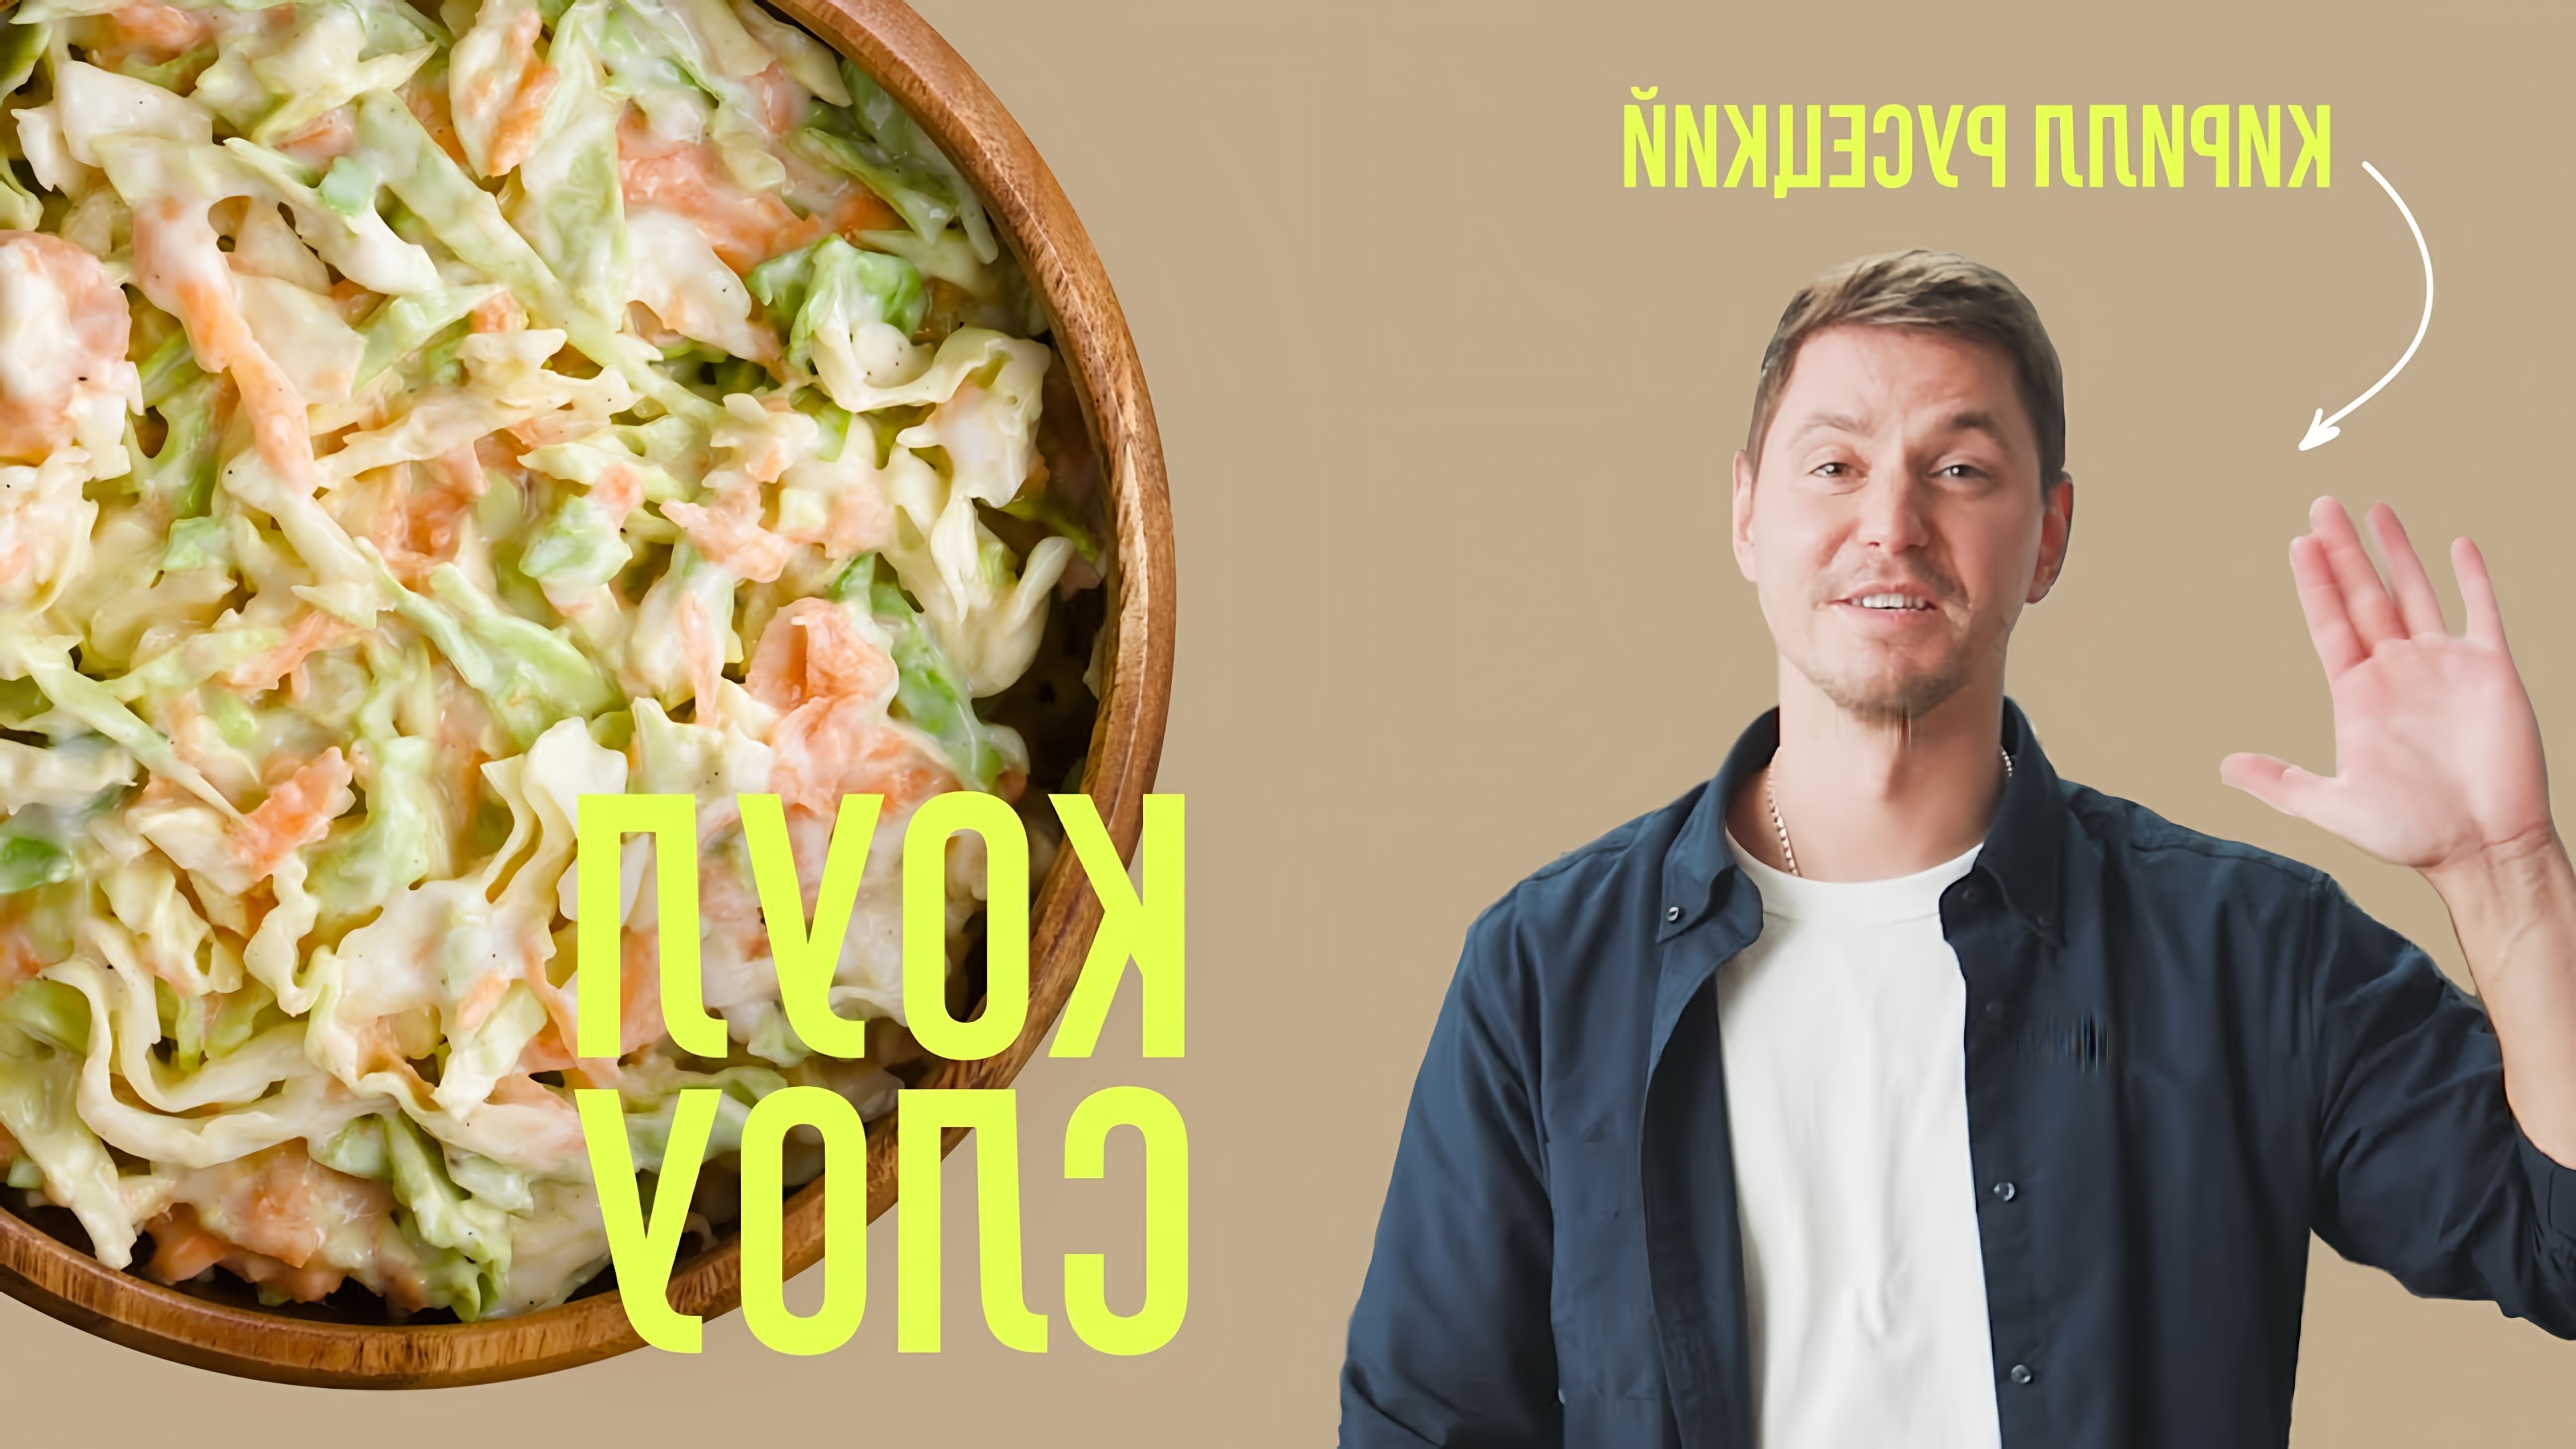 В этом видео шеф-повар Кирилл Русецкий показывает, как приготовить салат Коул Слоу, также известный как салат с капустой